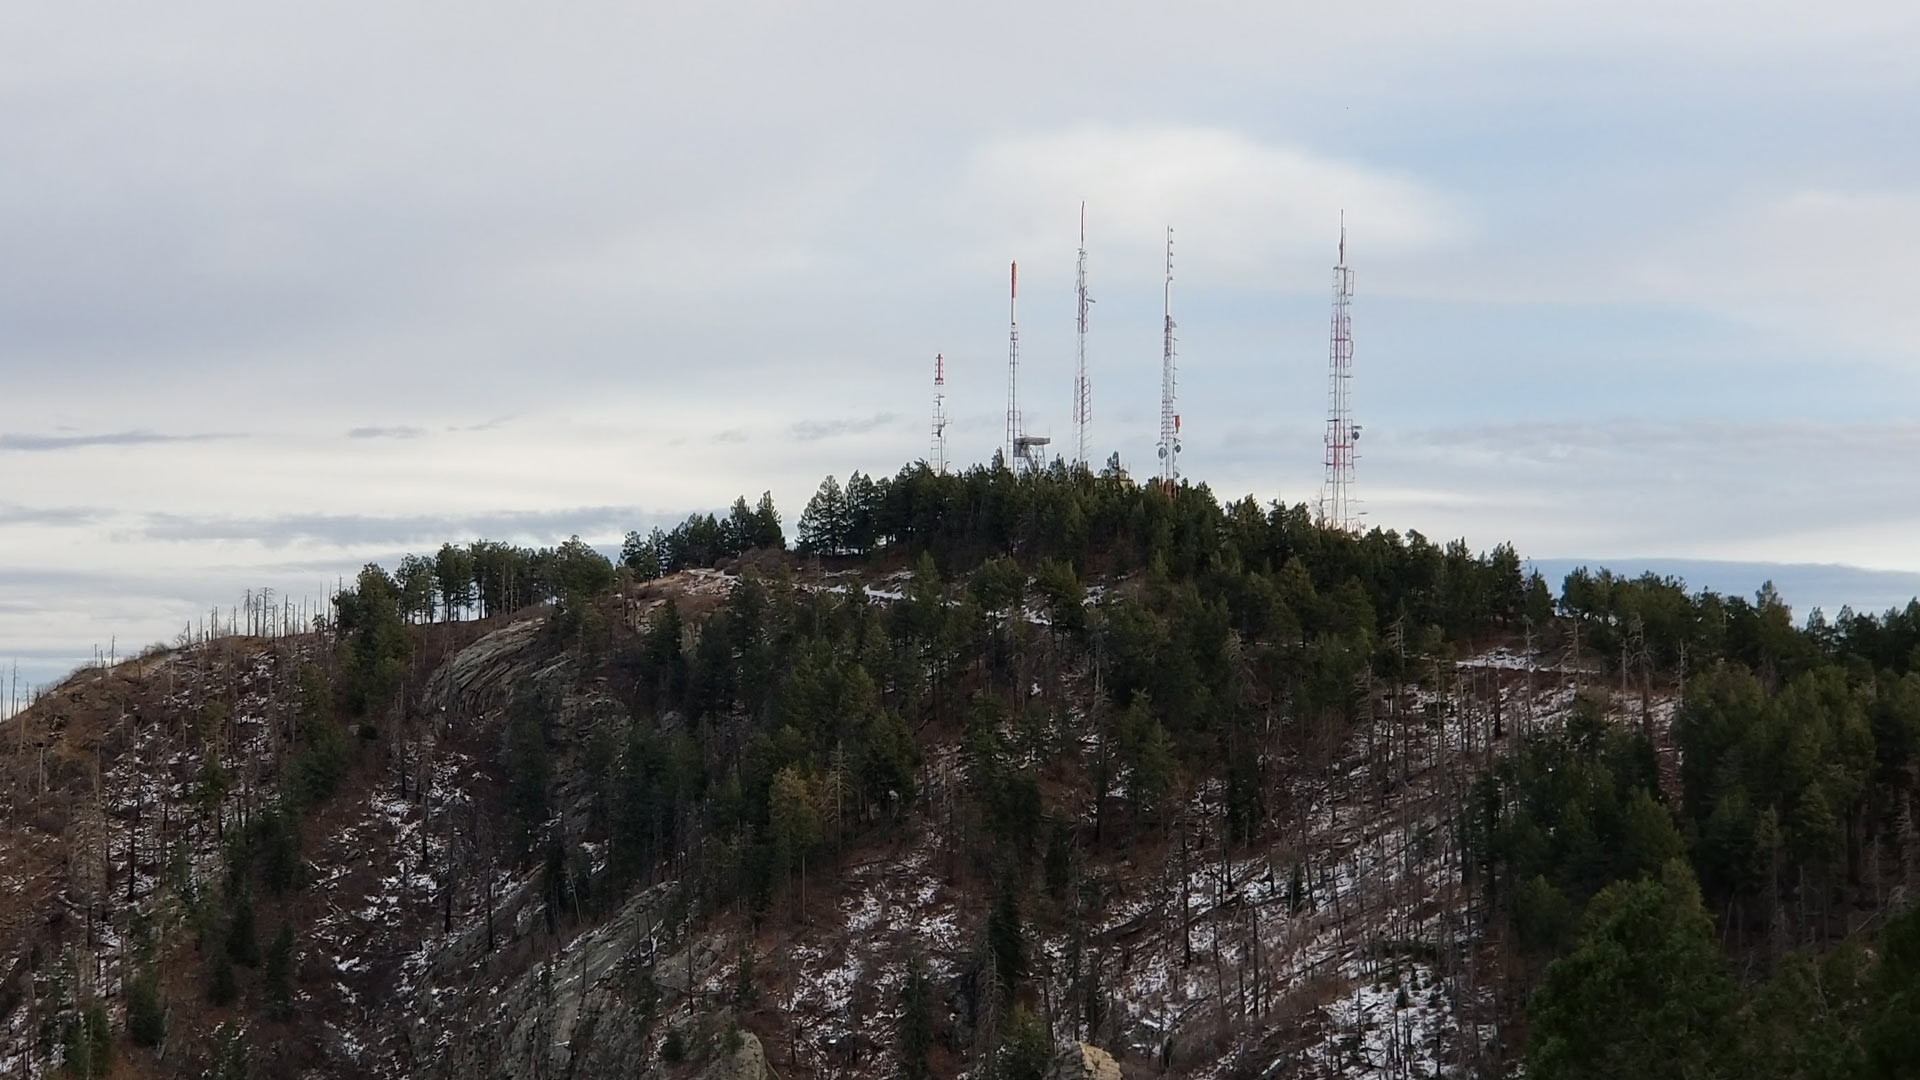 Mt. Bigelow towers